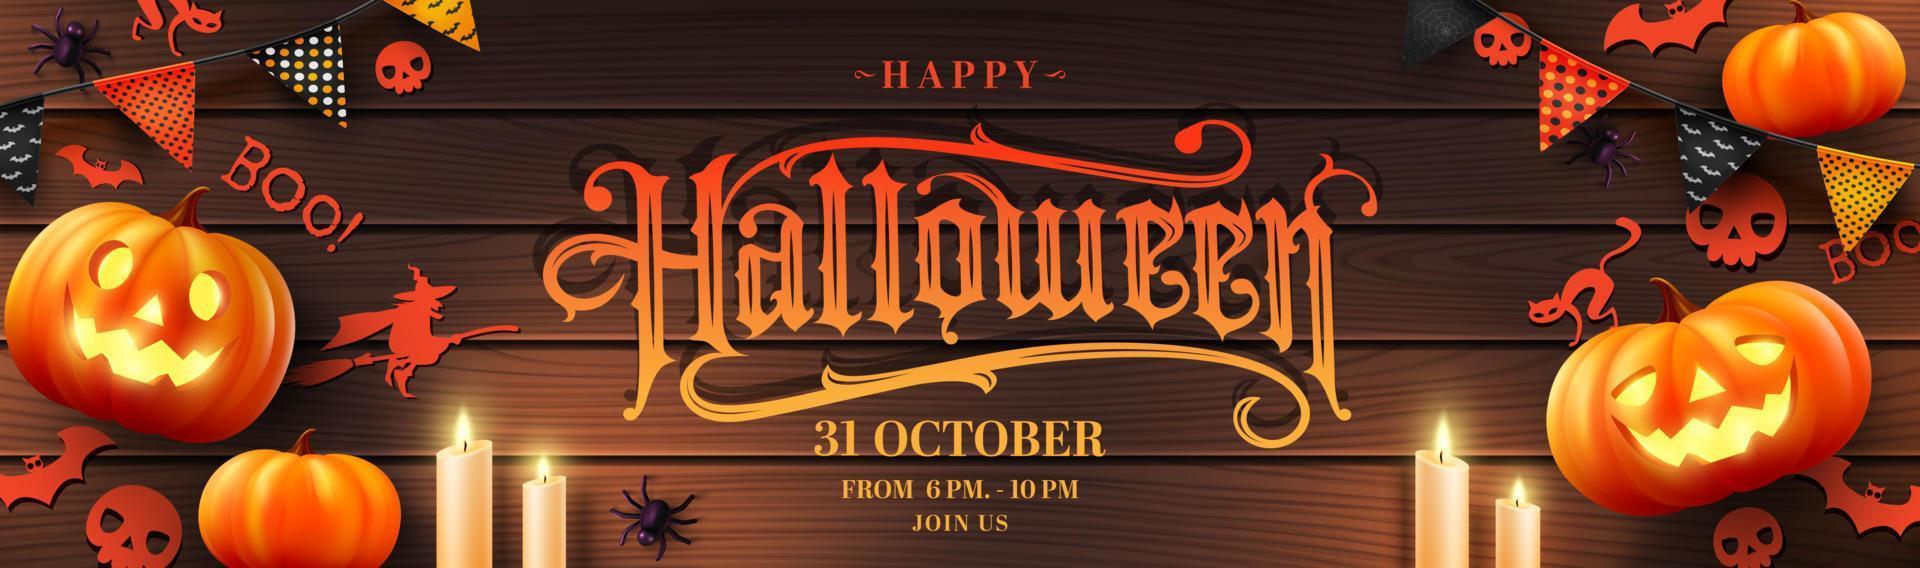 vecteur d'affiche ou de bannière d'halloween avec citrouille d'halloween, fantôme, chandelle, bruants et éléments d'halloween.site Web effrayant, arrière-plan ou modèle d'halloween de bannière.